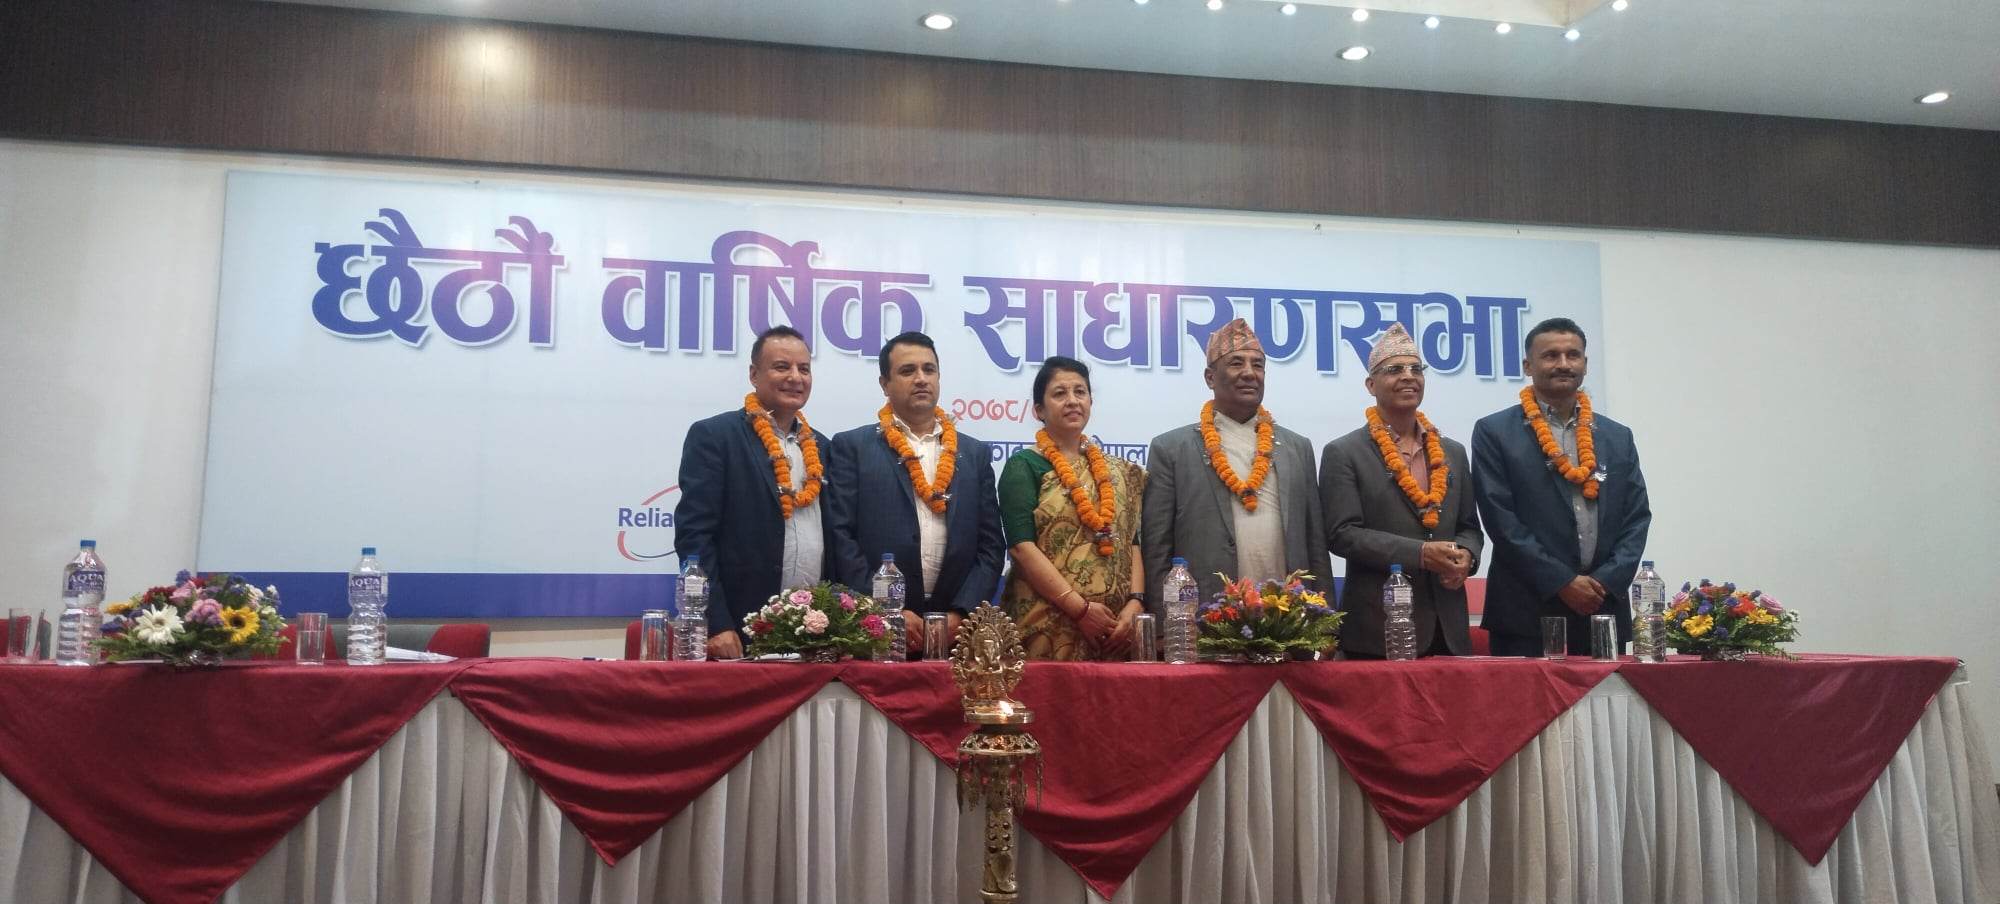 रिलायबल नेपाल लाइफको छैटौं वार्षिक साधारण सभा सम्पन्न